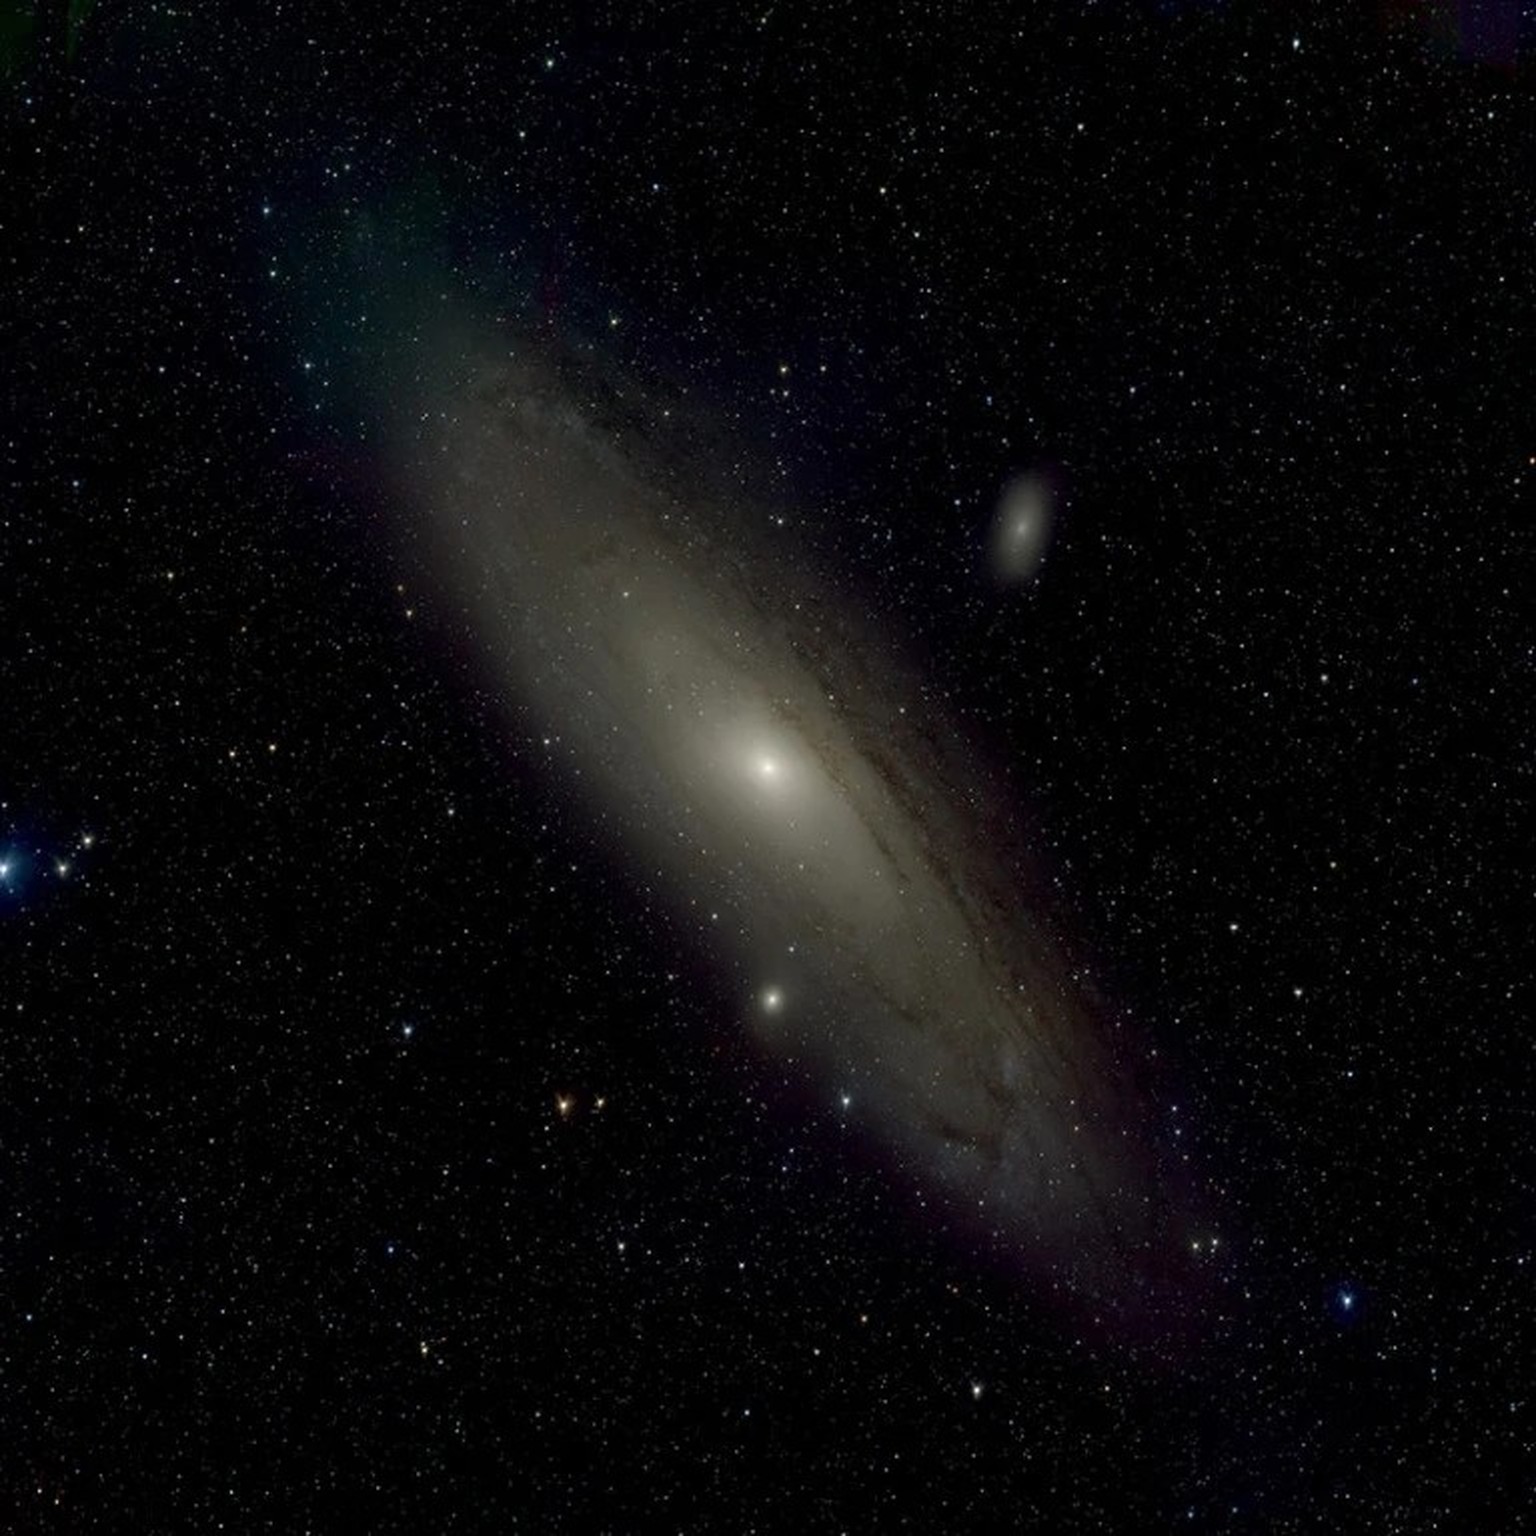 Aufnahme der Andromeda-Galaxie vom chinesischen Wide Field Survey Telescope (WFST).